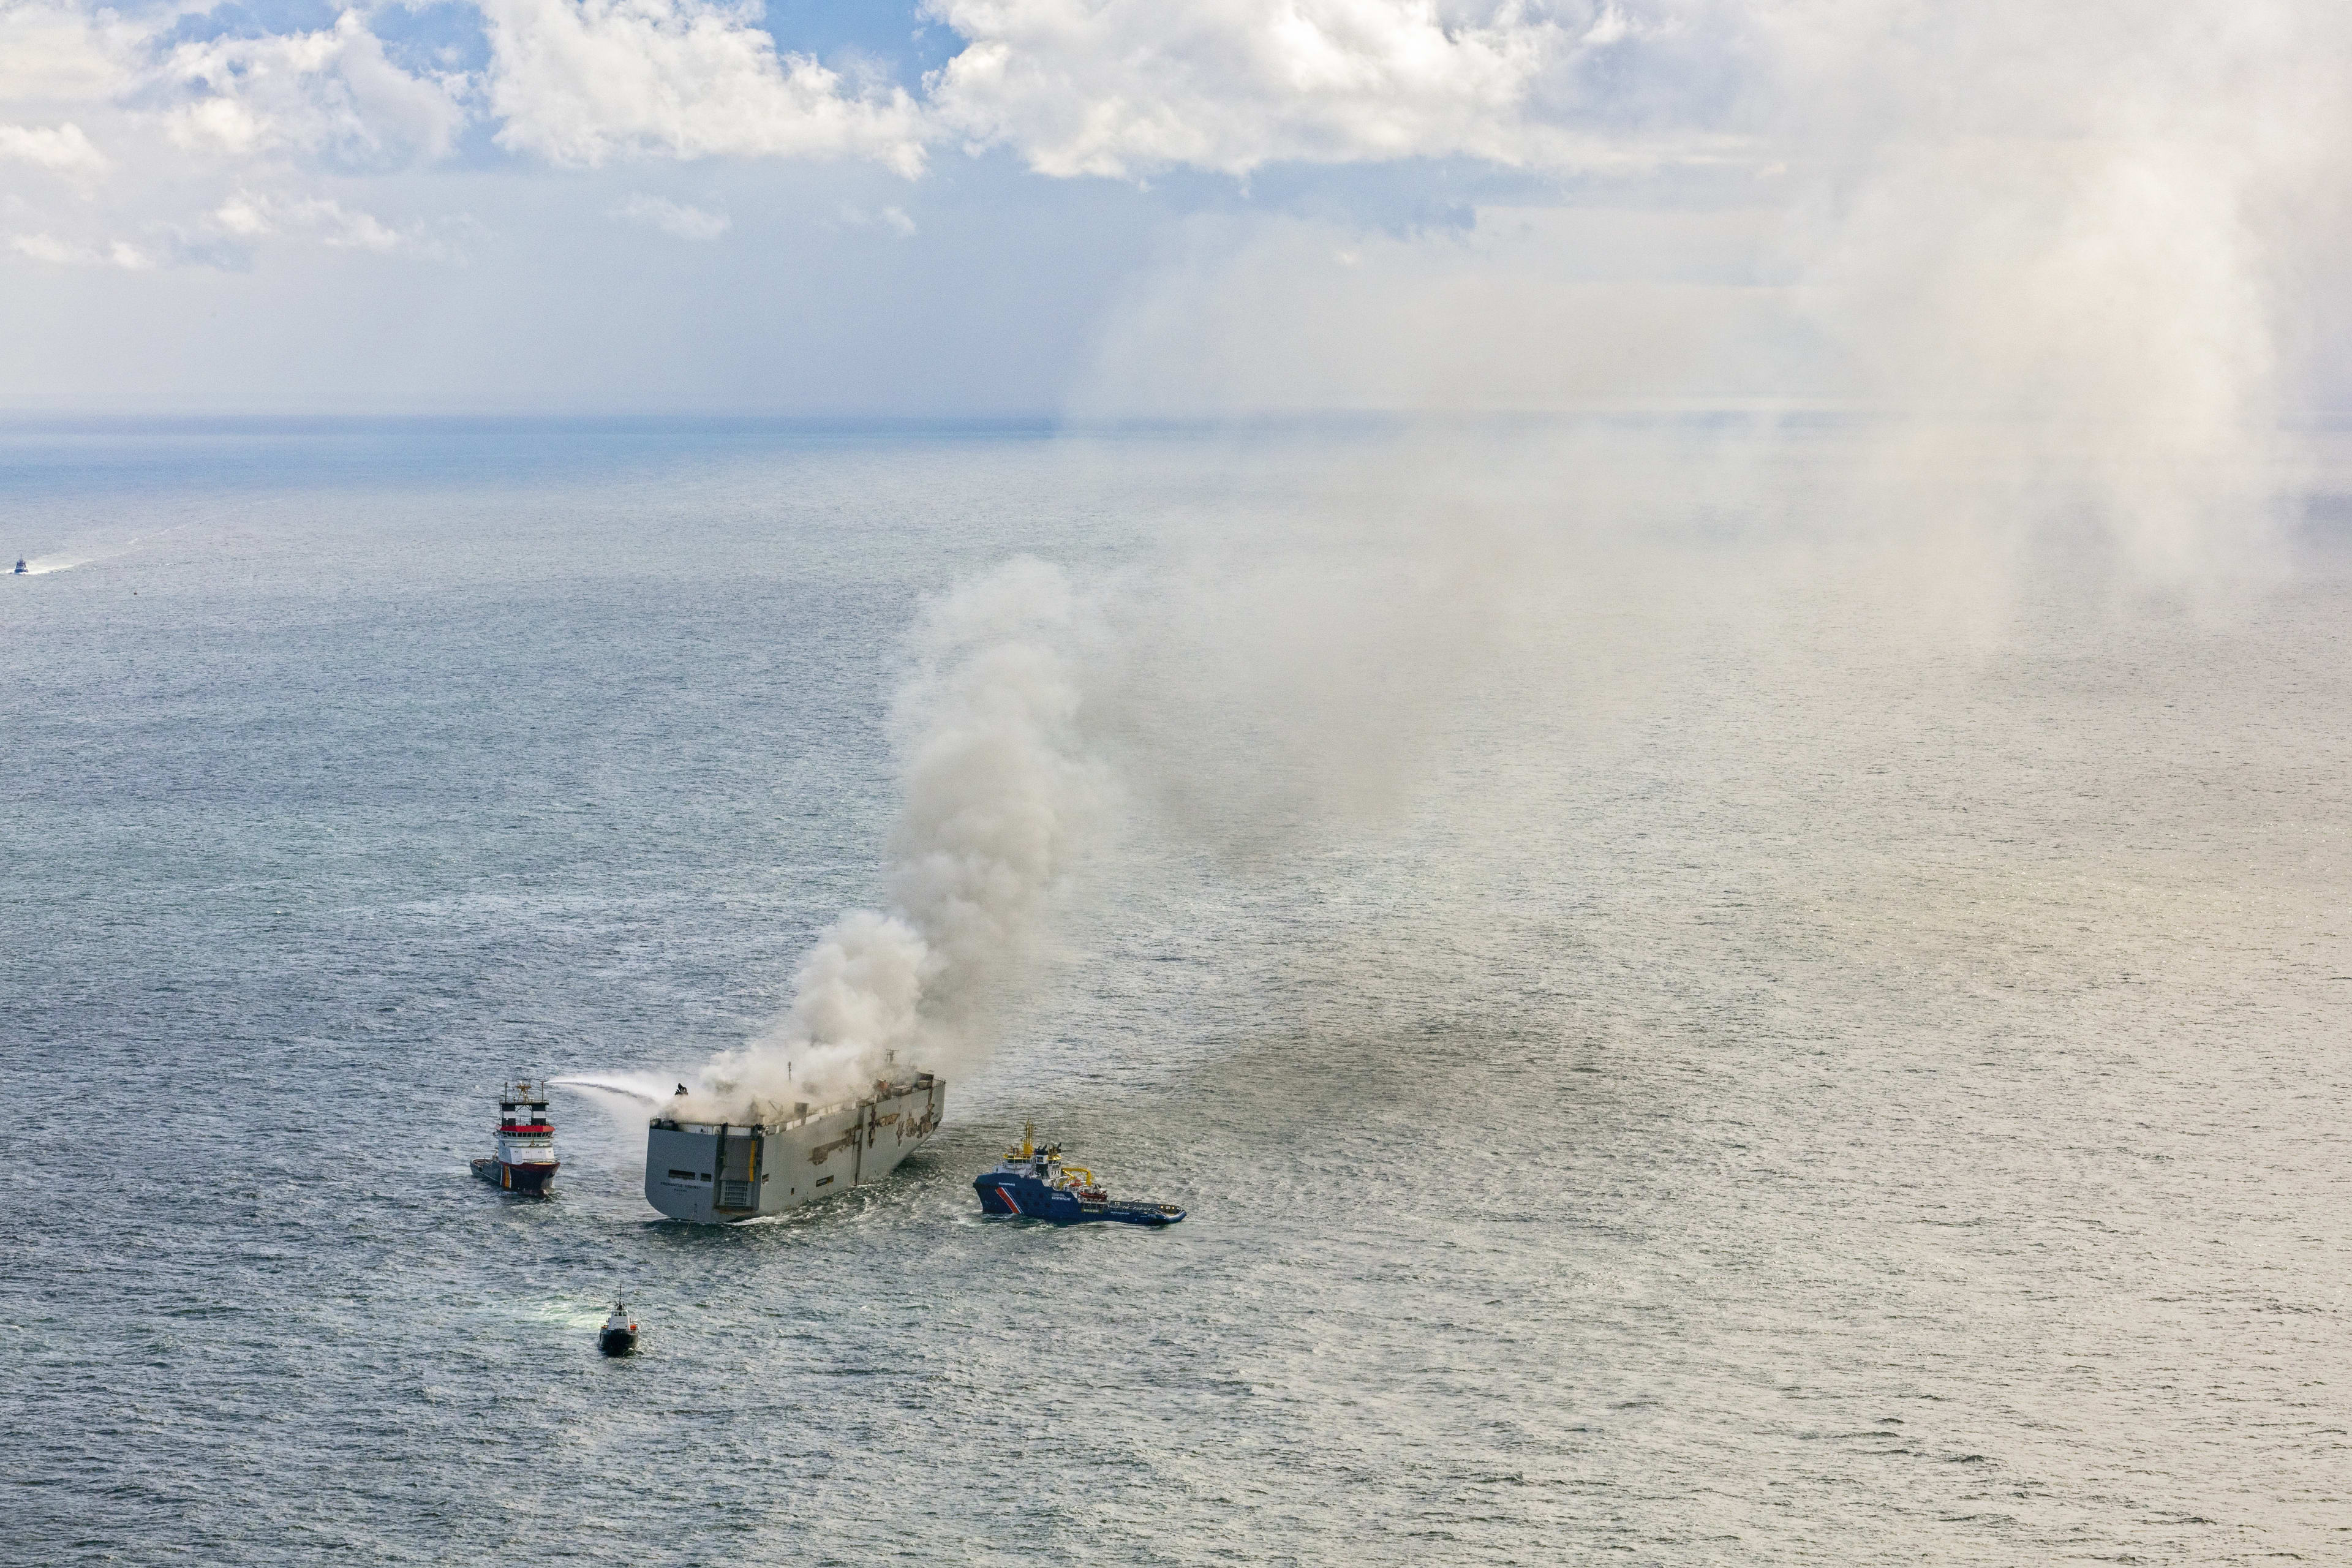 Willard viste bemanning brandend vrachtschip uit water: 'Vuur verspreidde zich veel sneller dan verwacht'